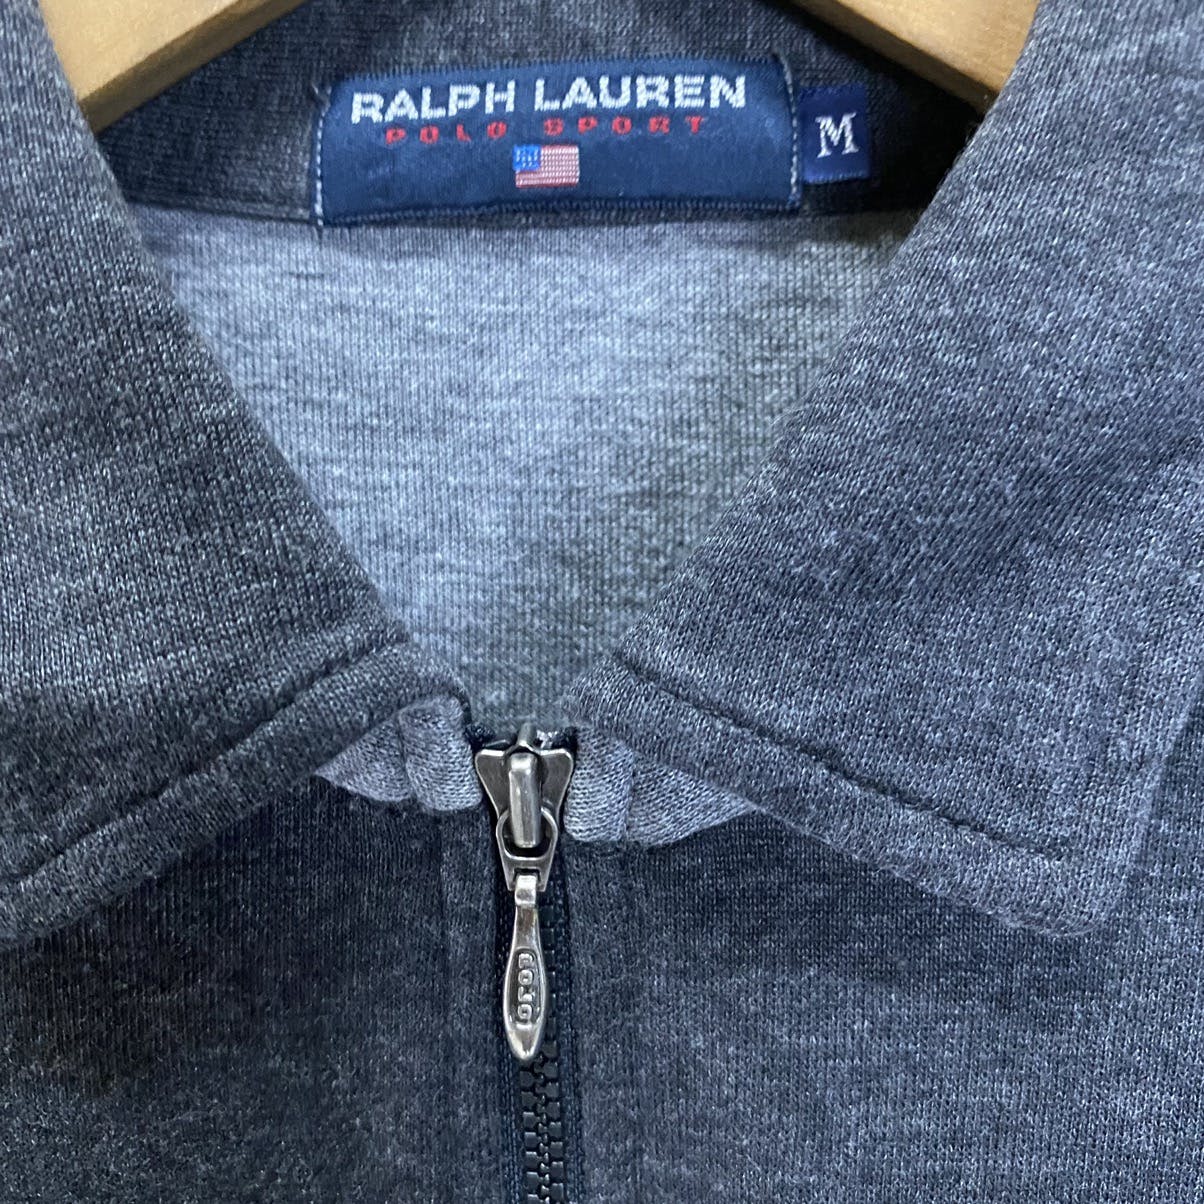 Ralph Lauren Polo Sport zipper shirt long sleeve - 7